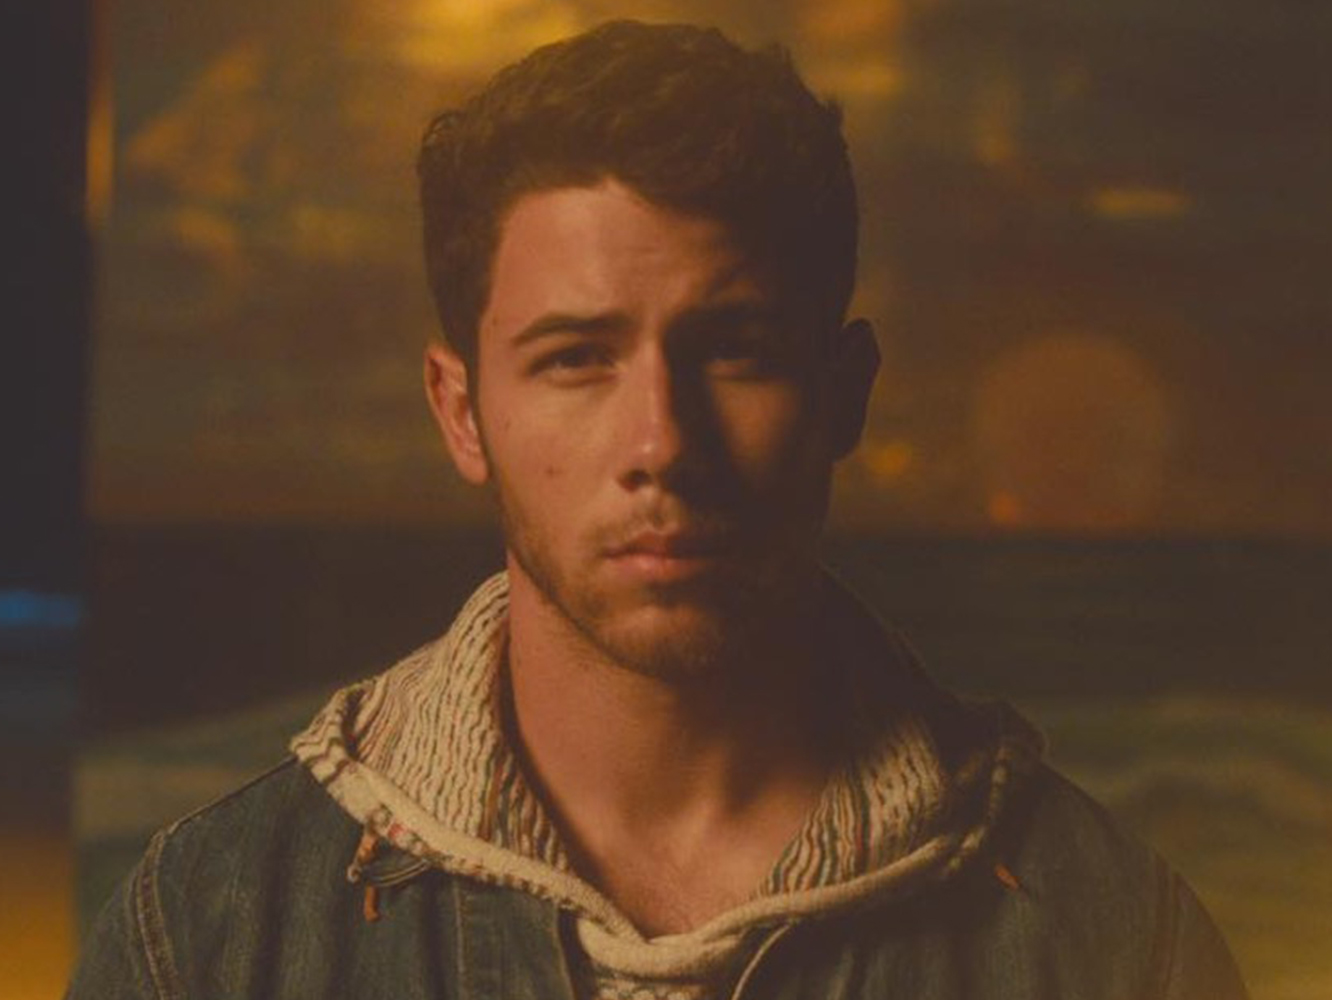  Nick Jonas sigue bien suavecito en ‘Find You’, su nuevo single